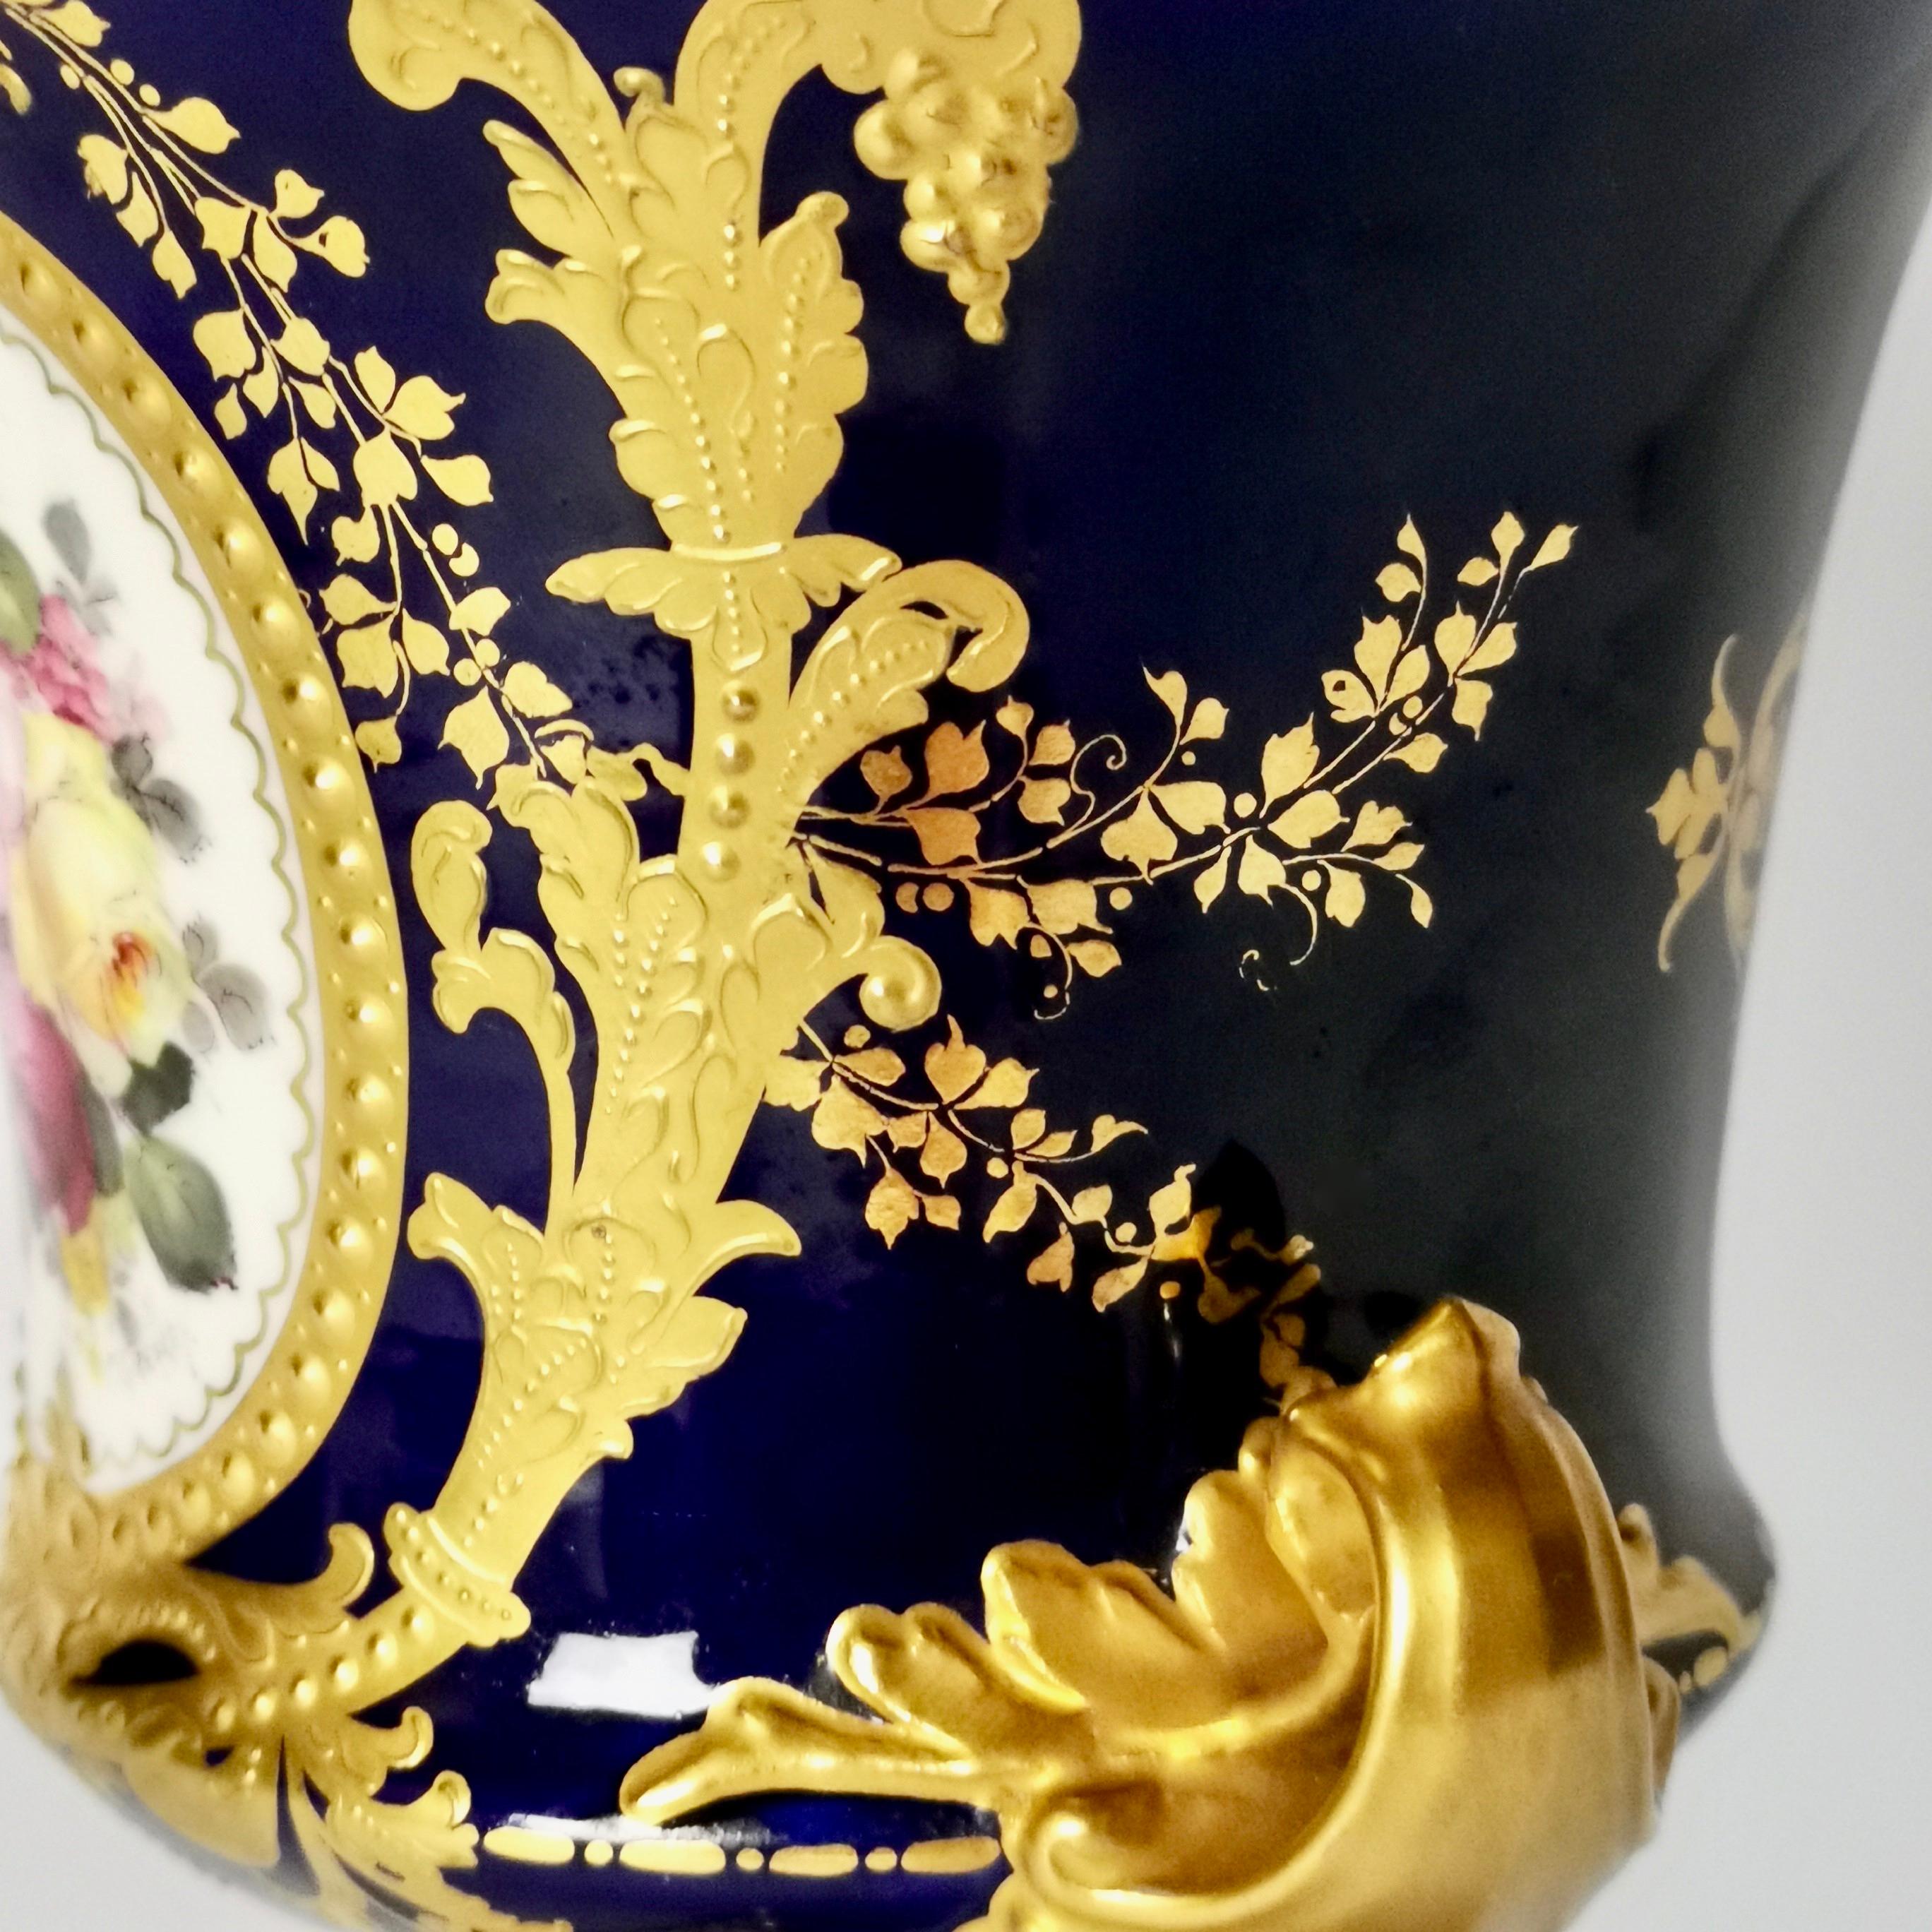 Royal Crown Derby Porcelain Campana Vase, Cobalt Blue, Flowers by C Gresley 1916 For Sale 1